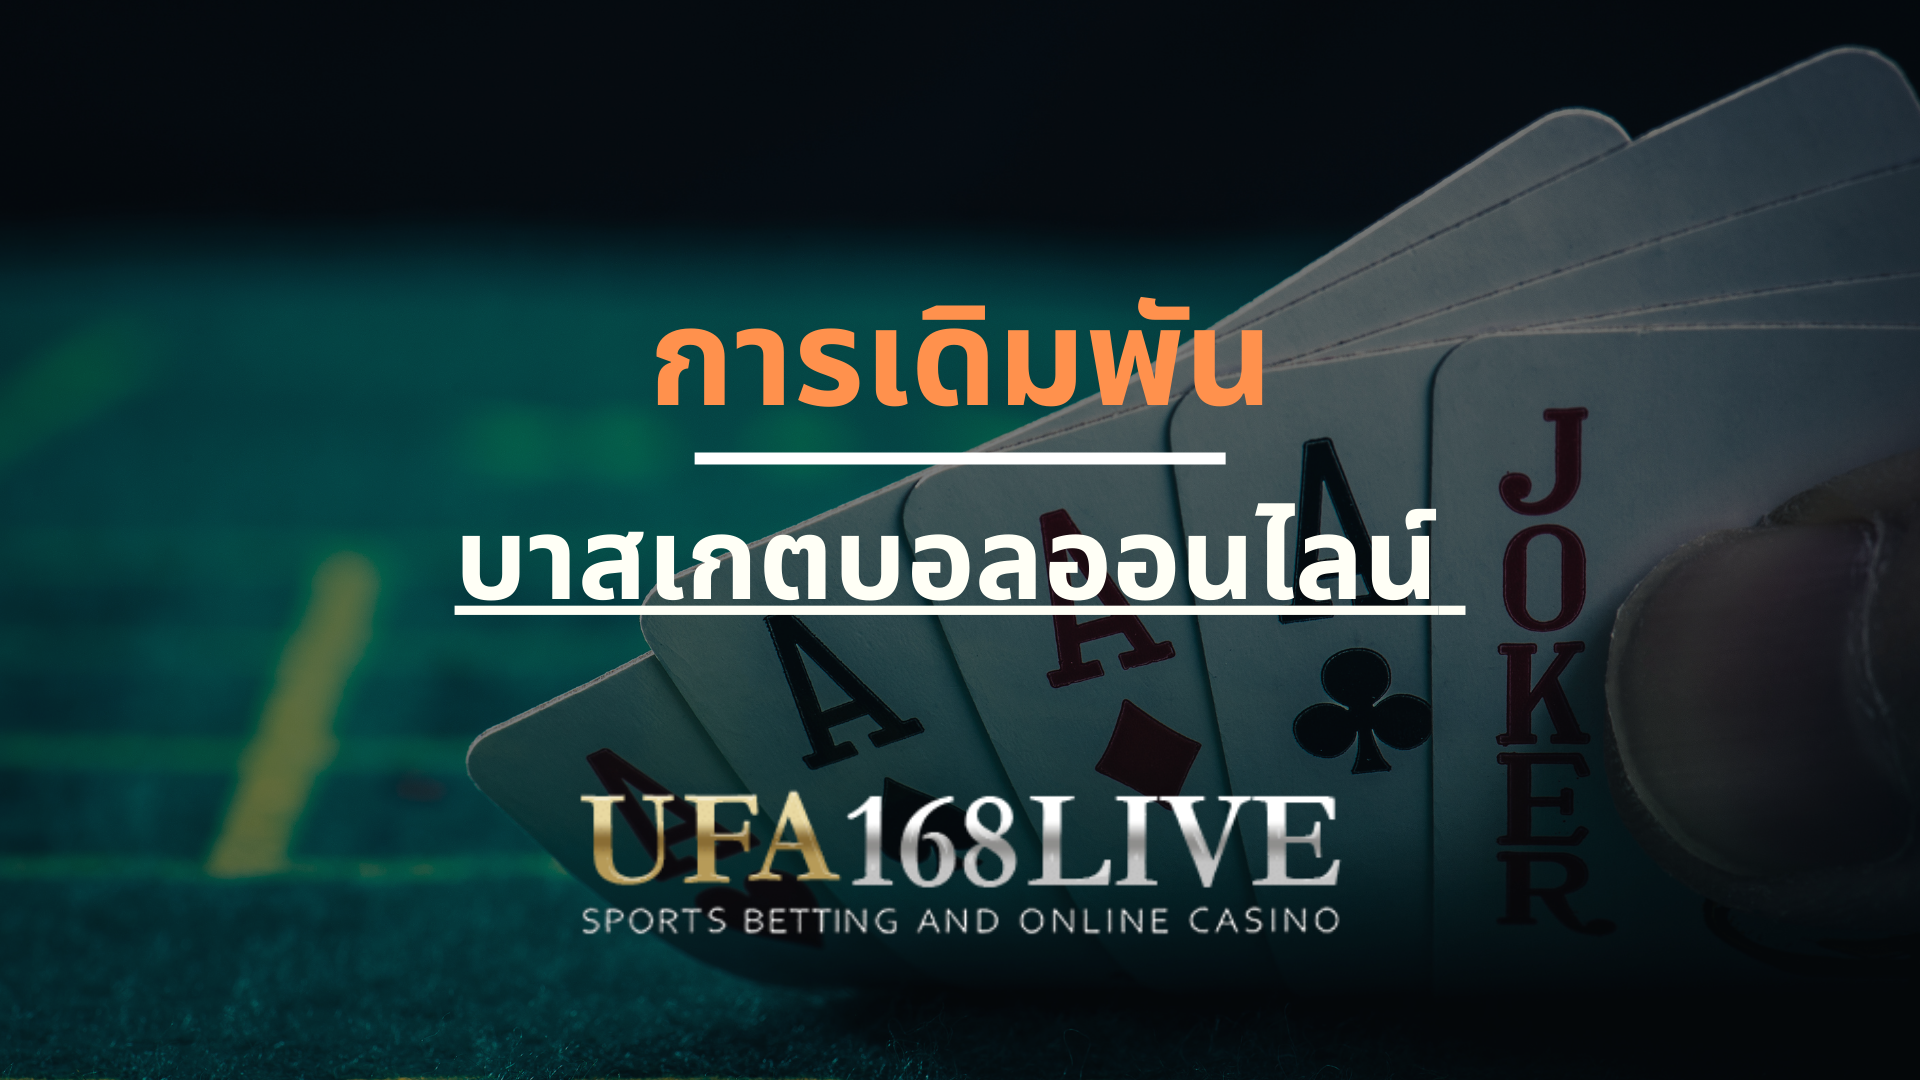 การเดิมพัน บาสเกตบอลออนไลน์ ผ่านเว็บ Ufa168live.casino